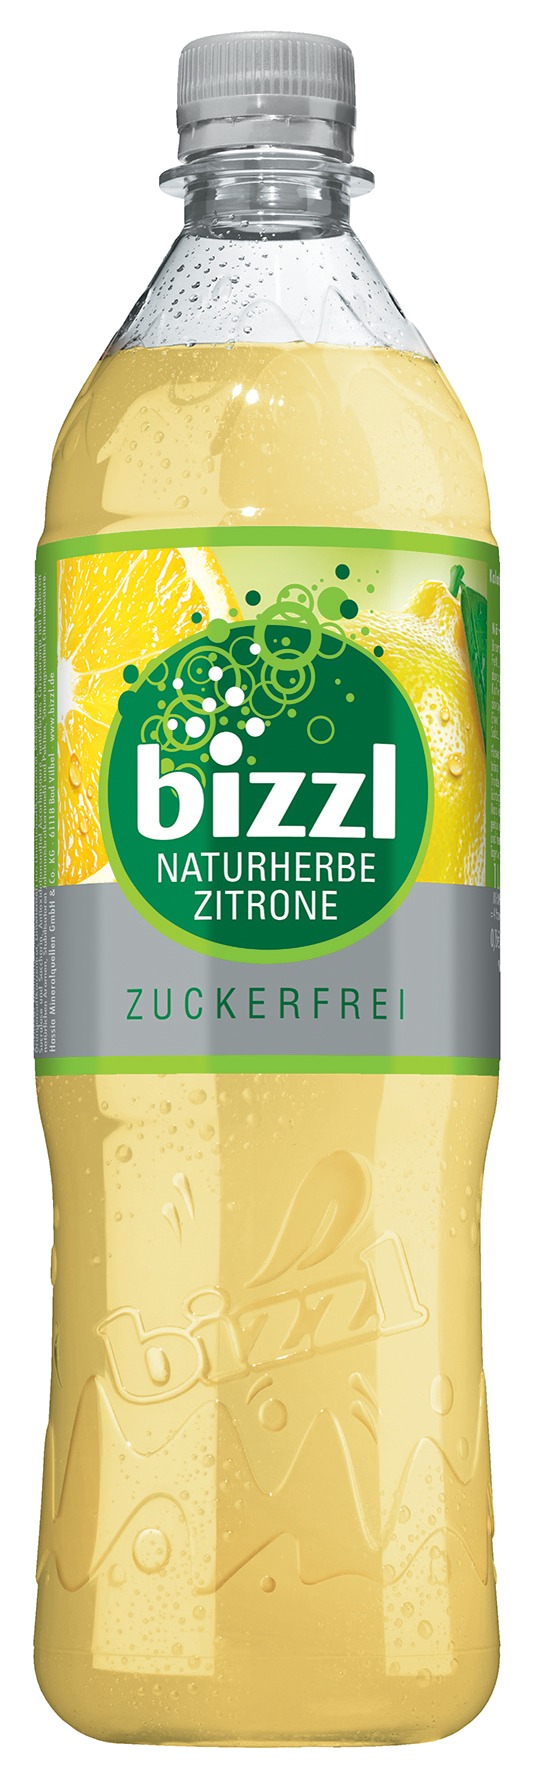 Bizzl Naturherbe Zitrone Zuckerfrei